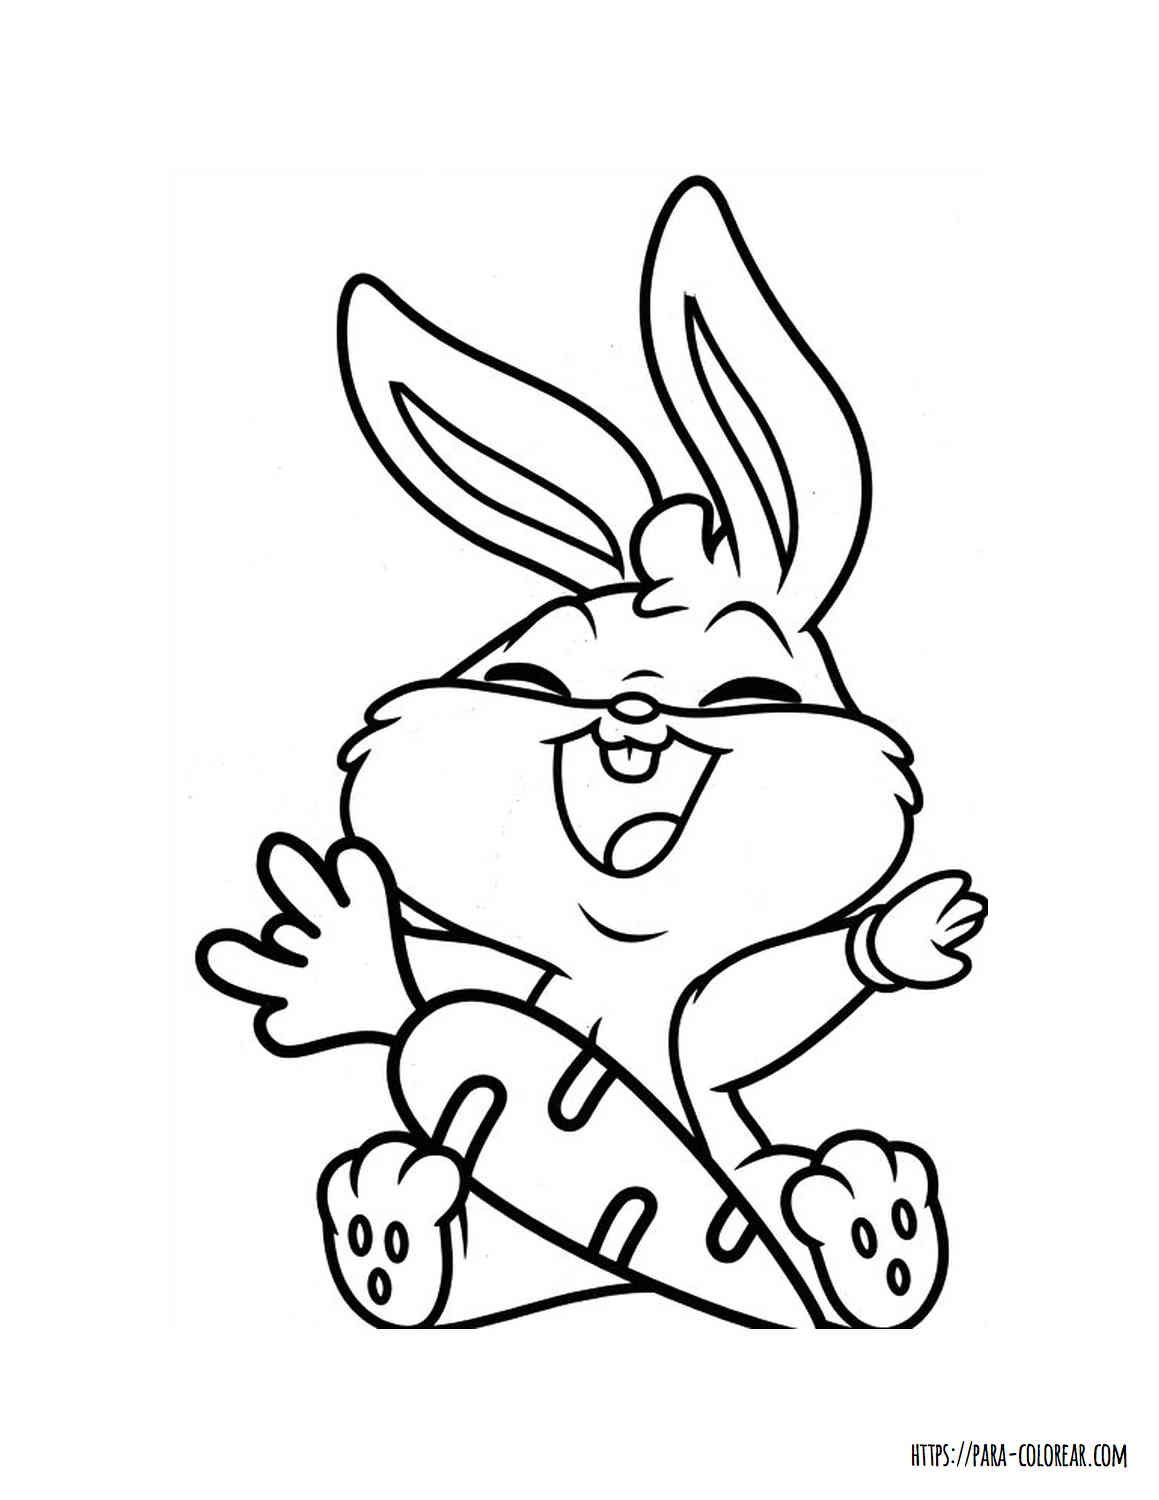 Dibujo De Baby Toons Mini Bugs Bunny Para Colorear Para Colorear Com